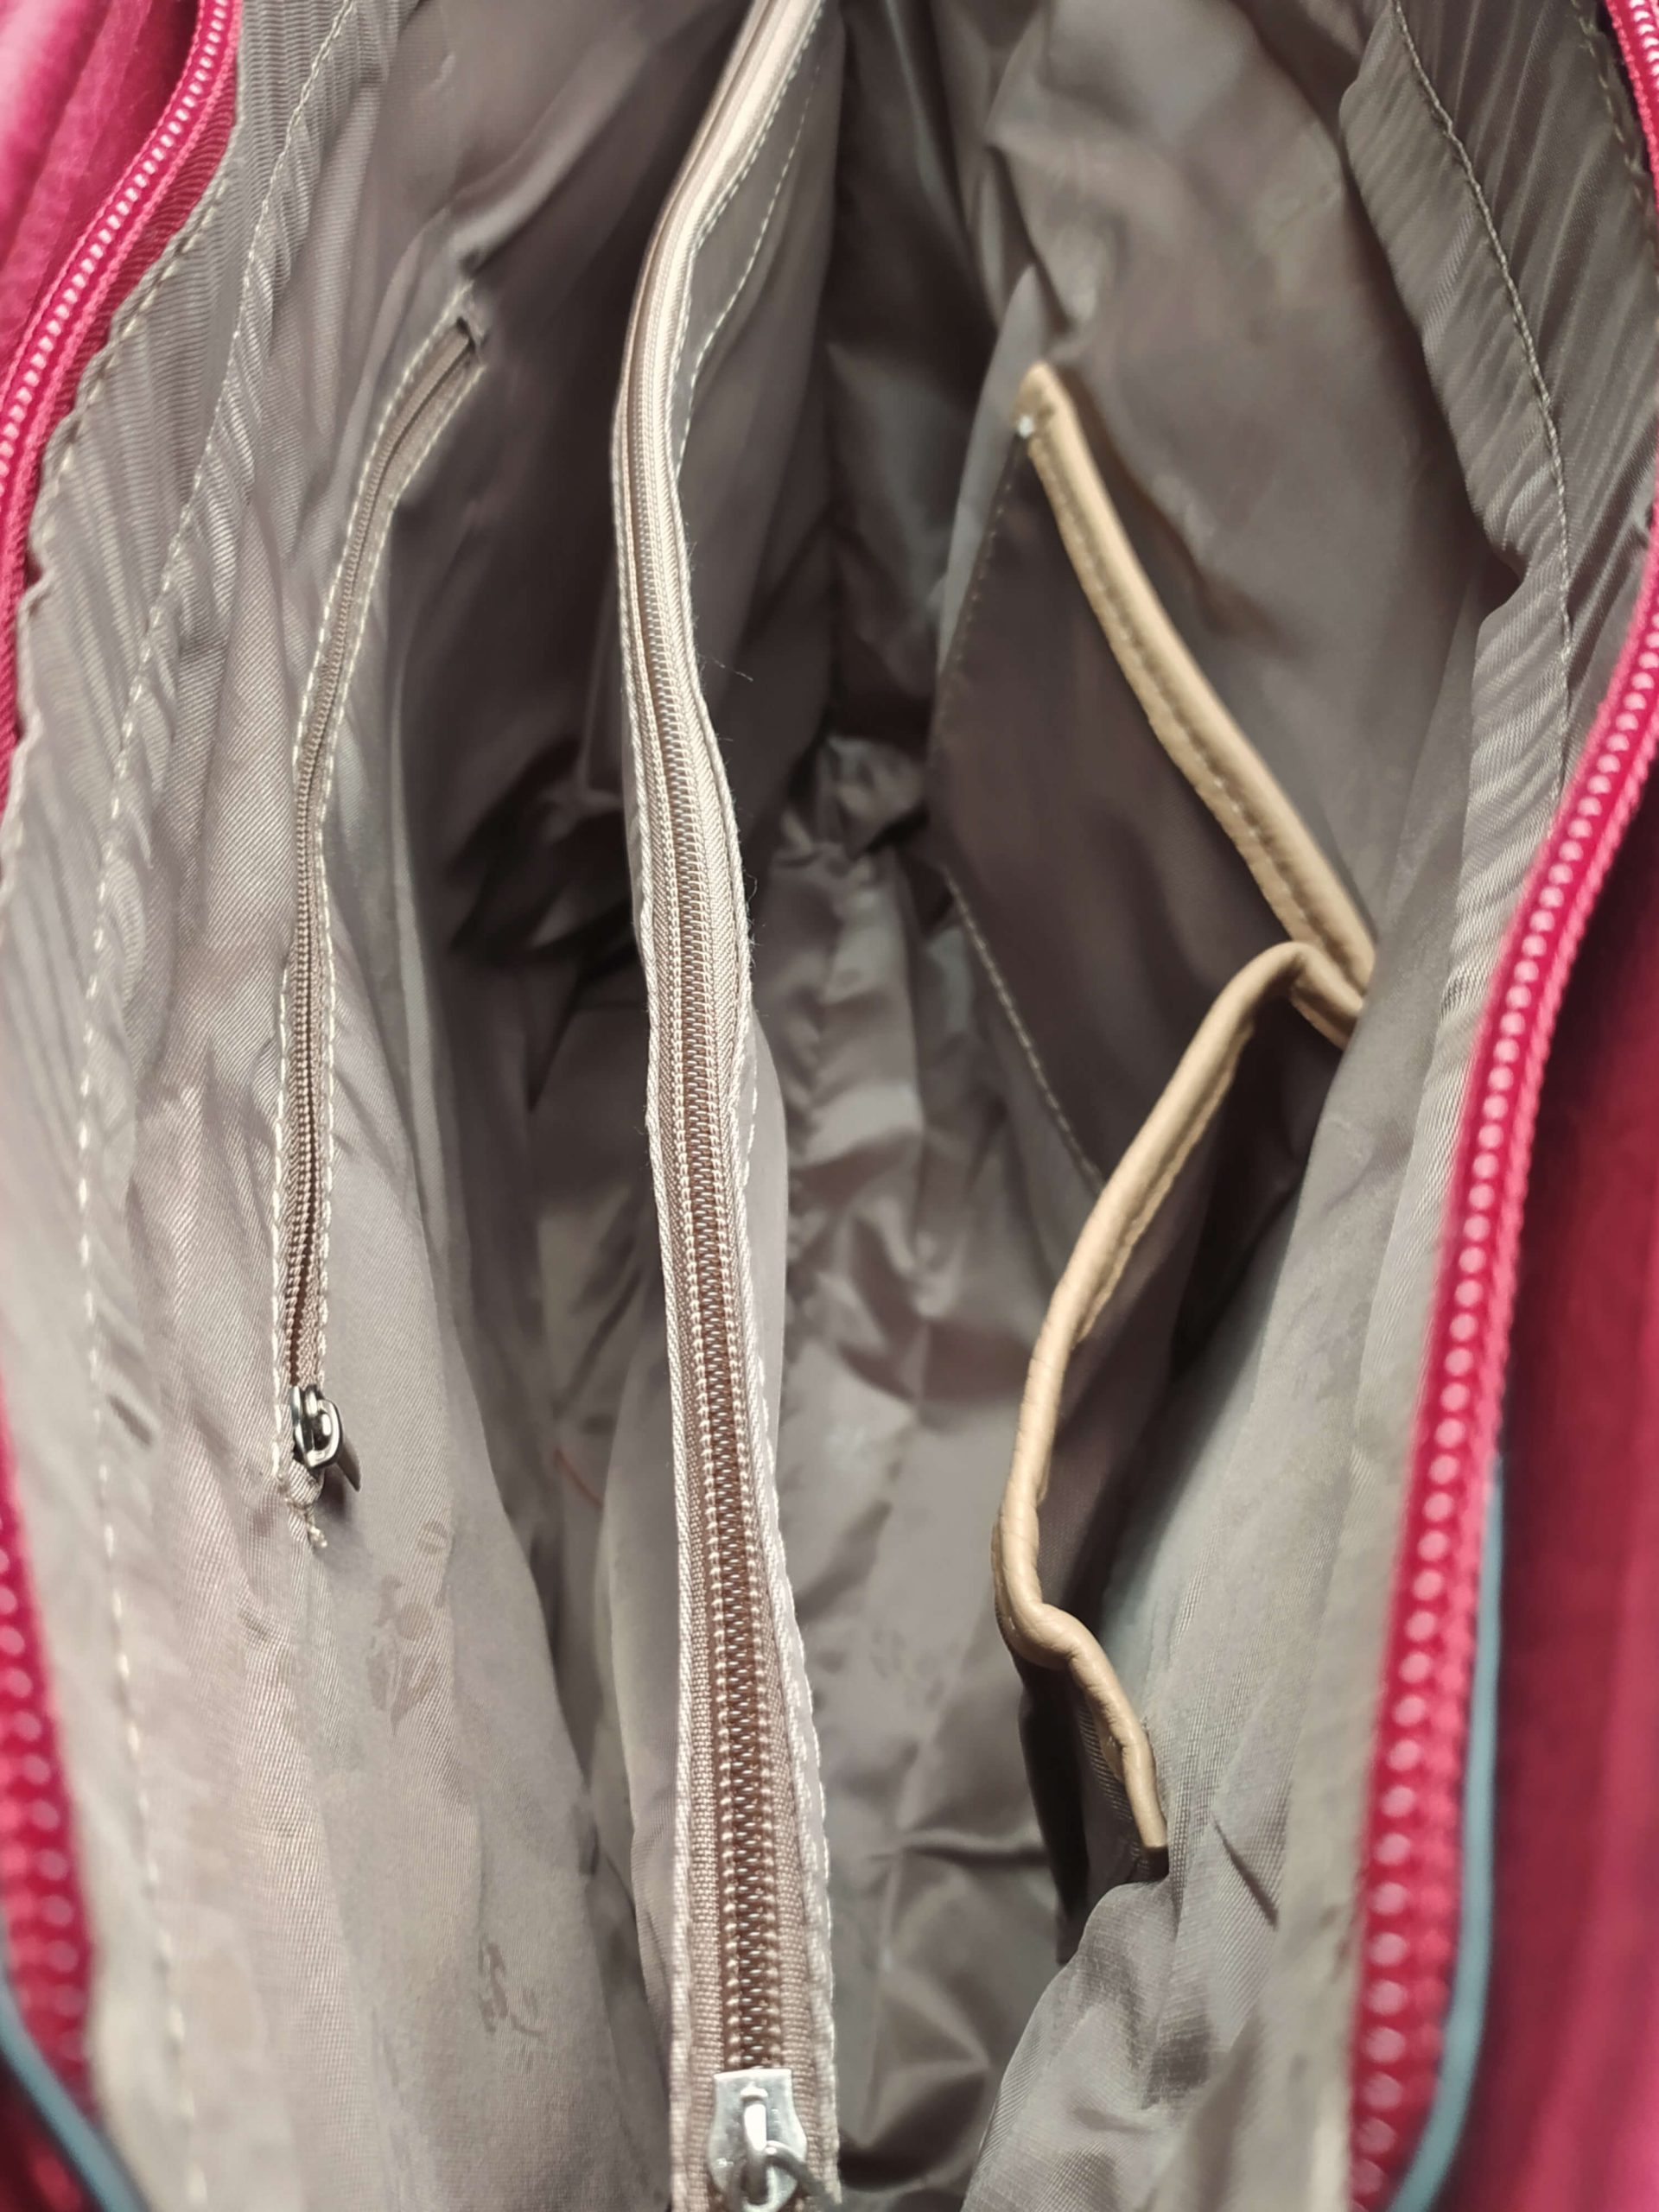 Vínová / bordó dámská kabelka přes rameno se vzory, Tapple, H22505, vnitřní uspořádání kabelky